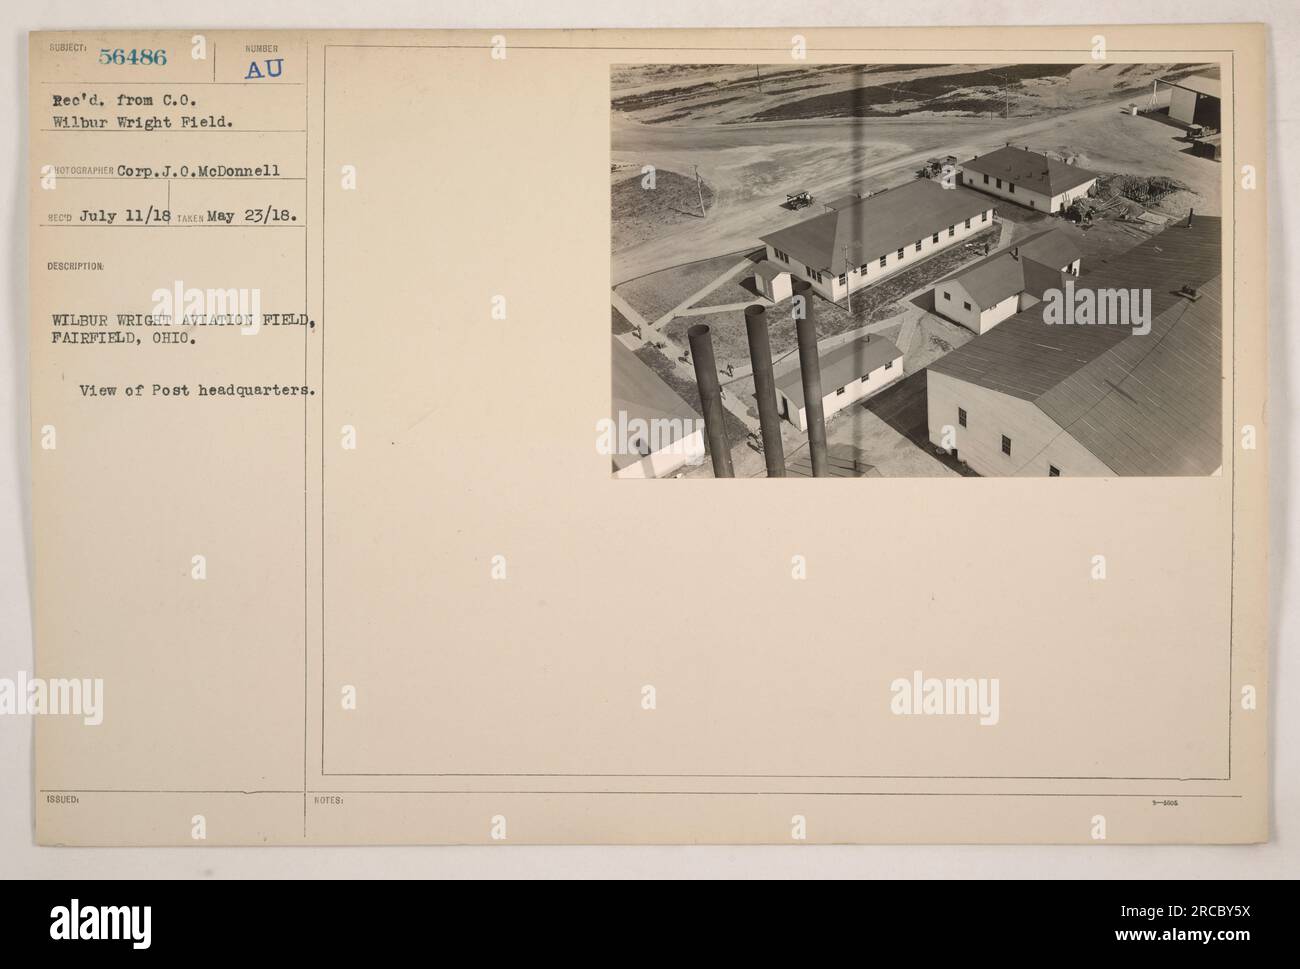 Quartier generale del Wilbur Wright Aviation Field a Fairfield, Ohio. La foto, scattata dalla Corp.J.O.McDonnell, mostra l'edificio e l'area circostante. Il numero di descrizione indica la posizione specifica. La fotografia è stata ricevuta dal Comandante l'11 luglio 1918, e i registri indicano che è stata rilasciata il 23 maggio 1918." Foto Stock